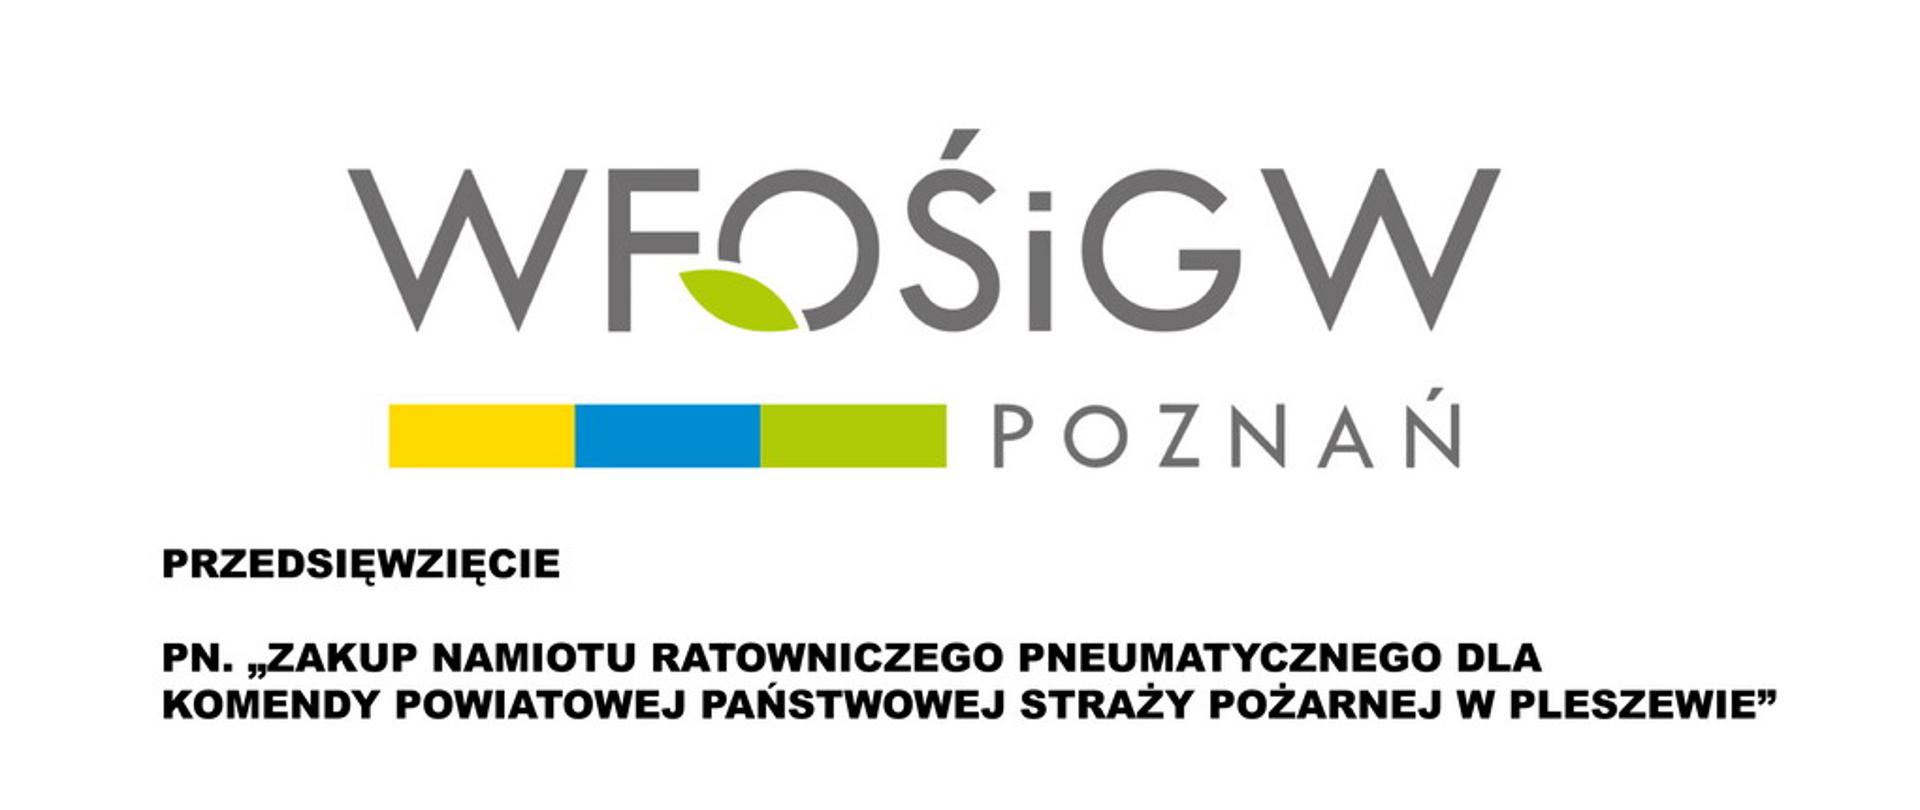 Logo WIOŚ wraz z nazwą programu